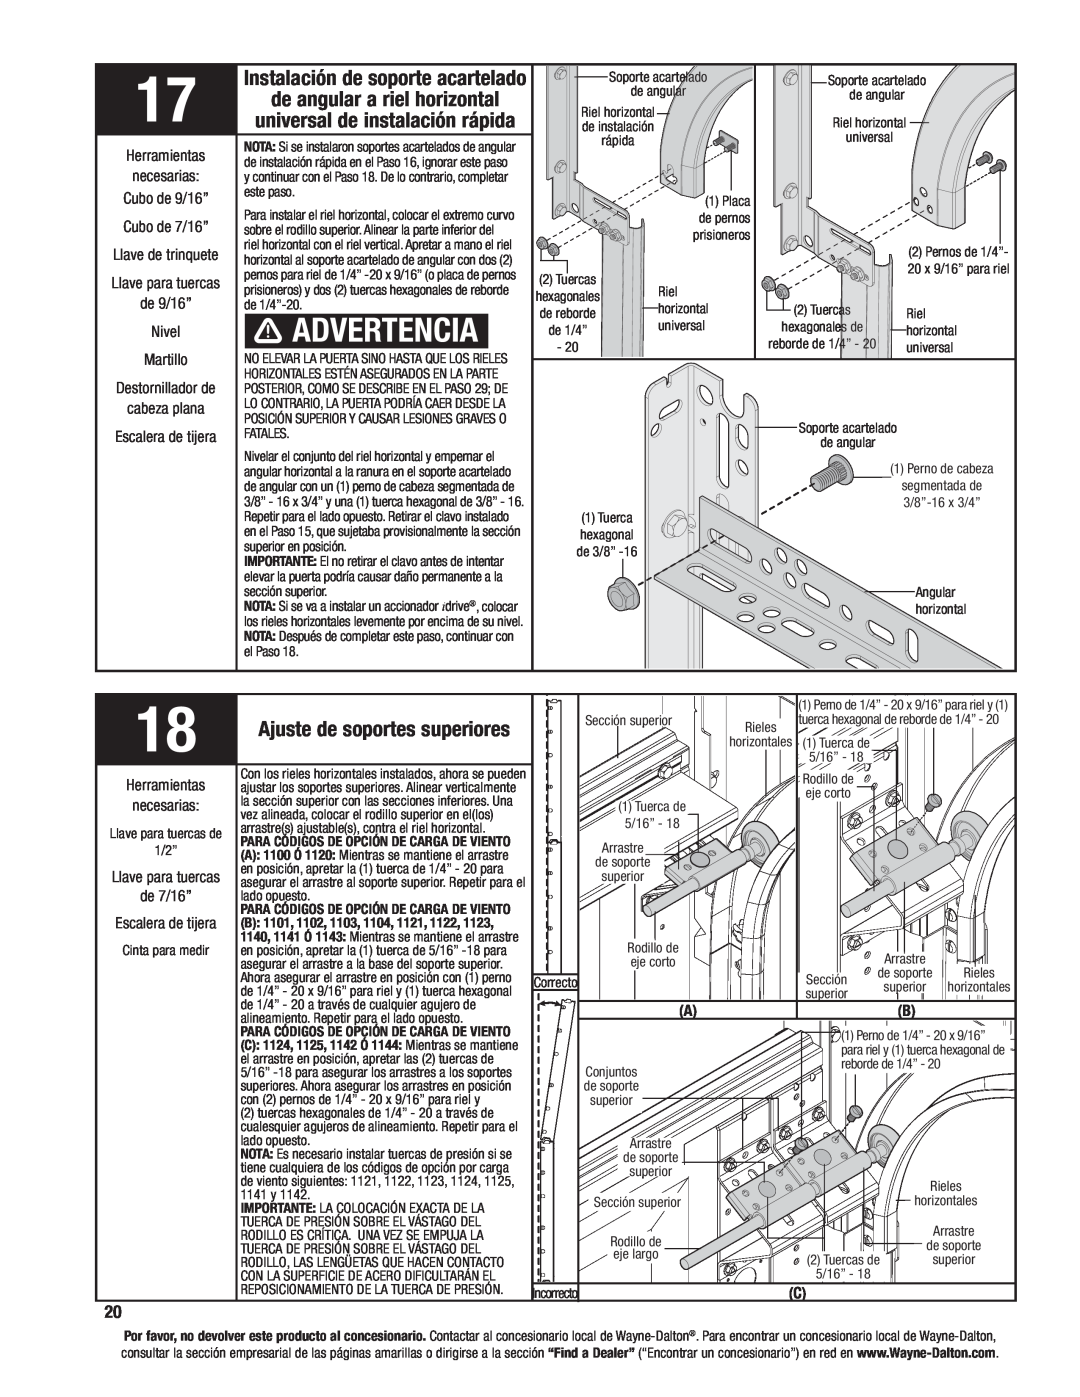 Wayne-Dalton 8200, 8000, 8100 manual Advertencia, Instalación de soporte acartelado, de angular a riel horizontal 